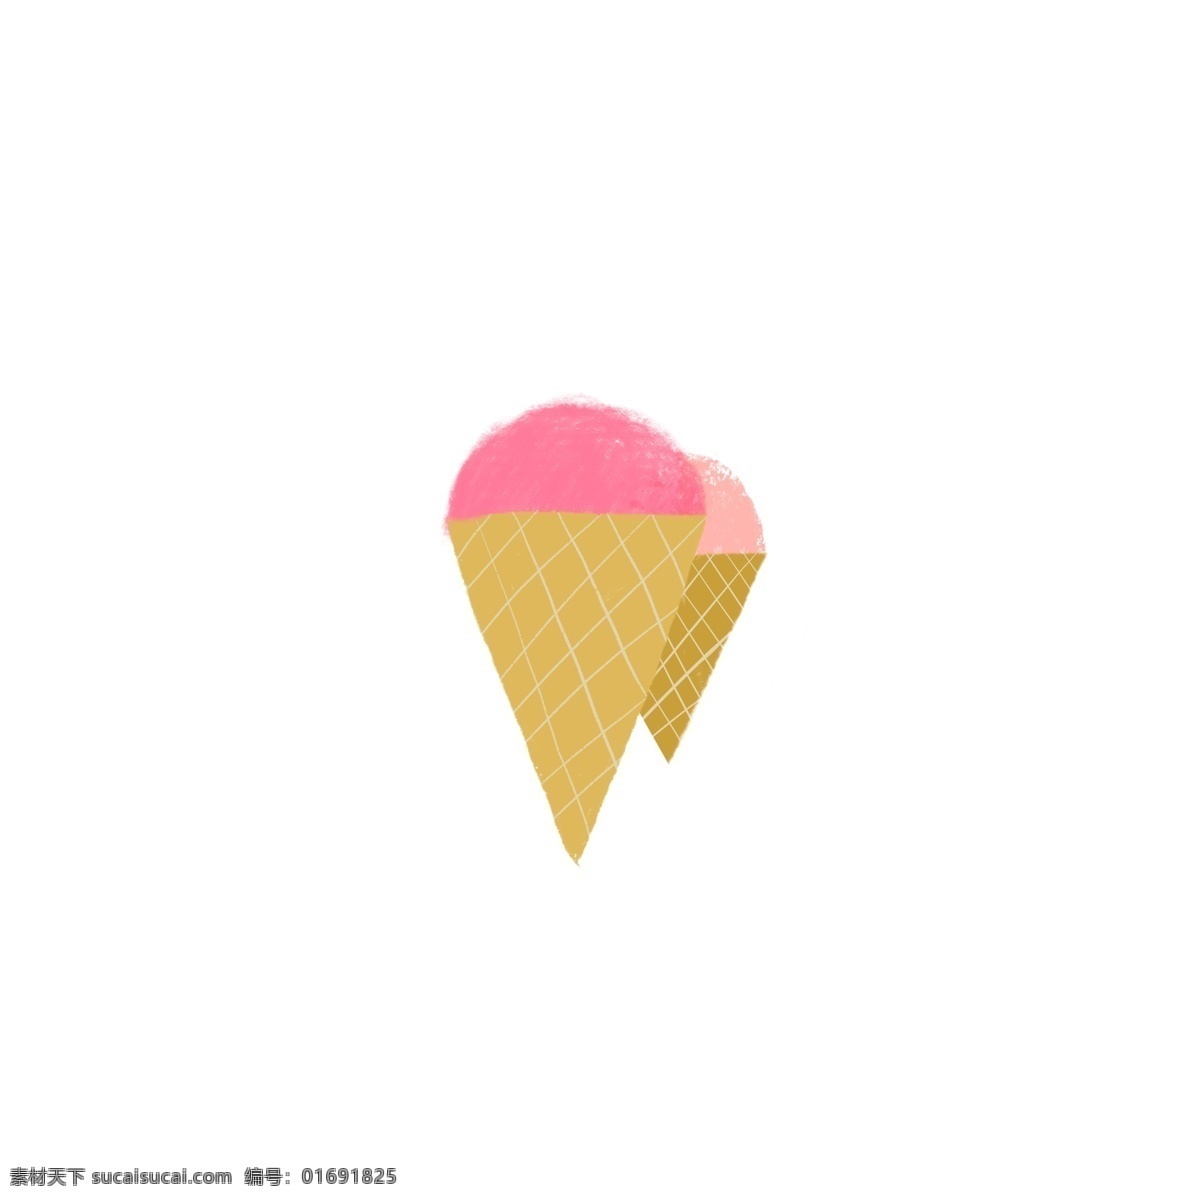 夏日 冰淇淋 可爱 甜筒 水果味 粉色系 画册 海报 淘宝 促销 清新 喷绘 包装 甜美 雪糕